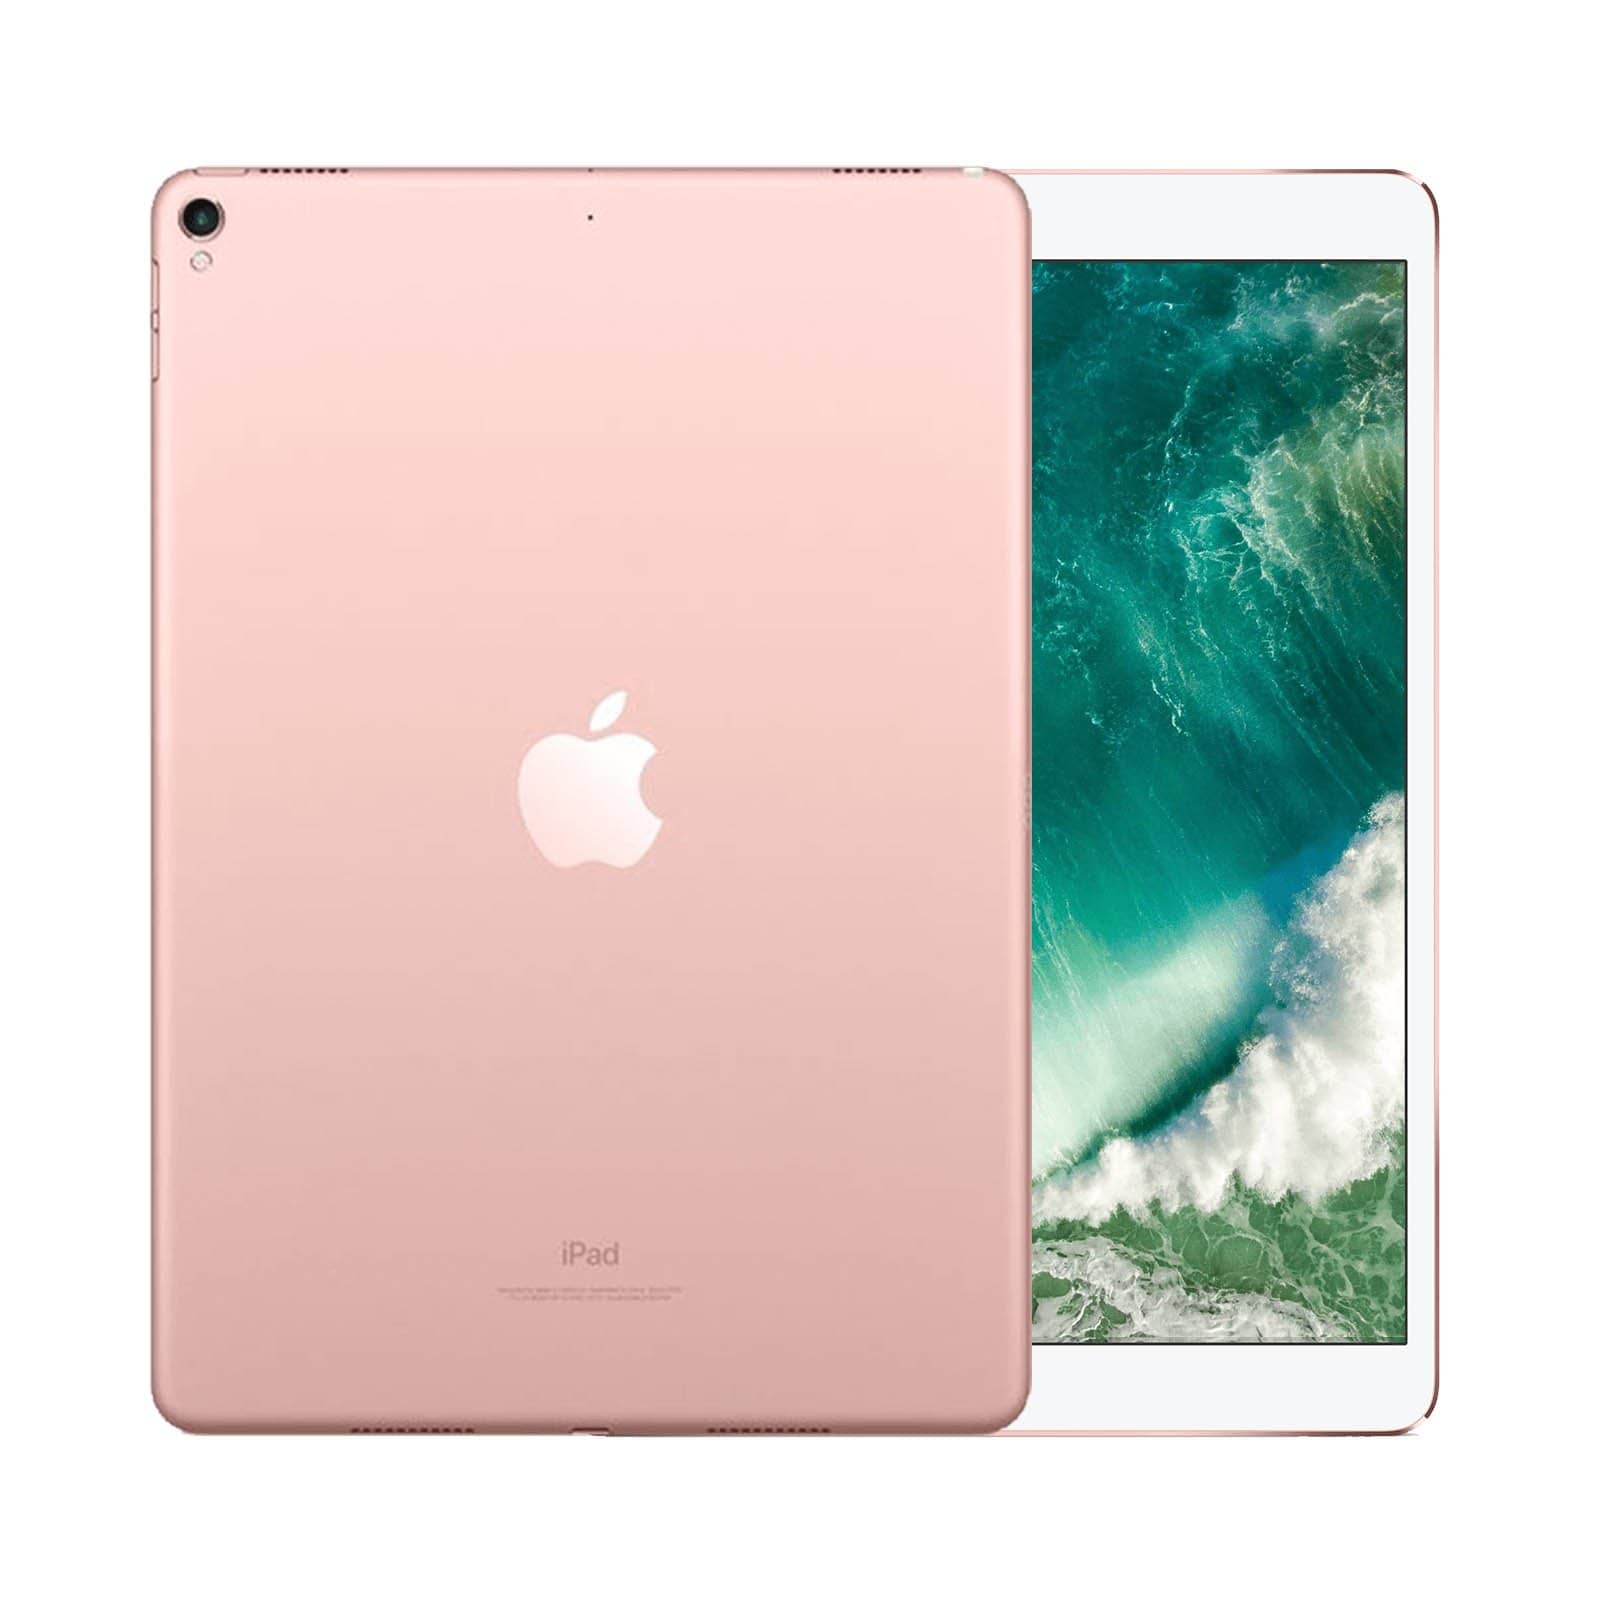 【専用】iPad Pro 256 GB ローズゴールド　Rose Gold